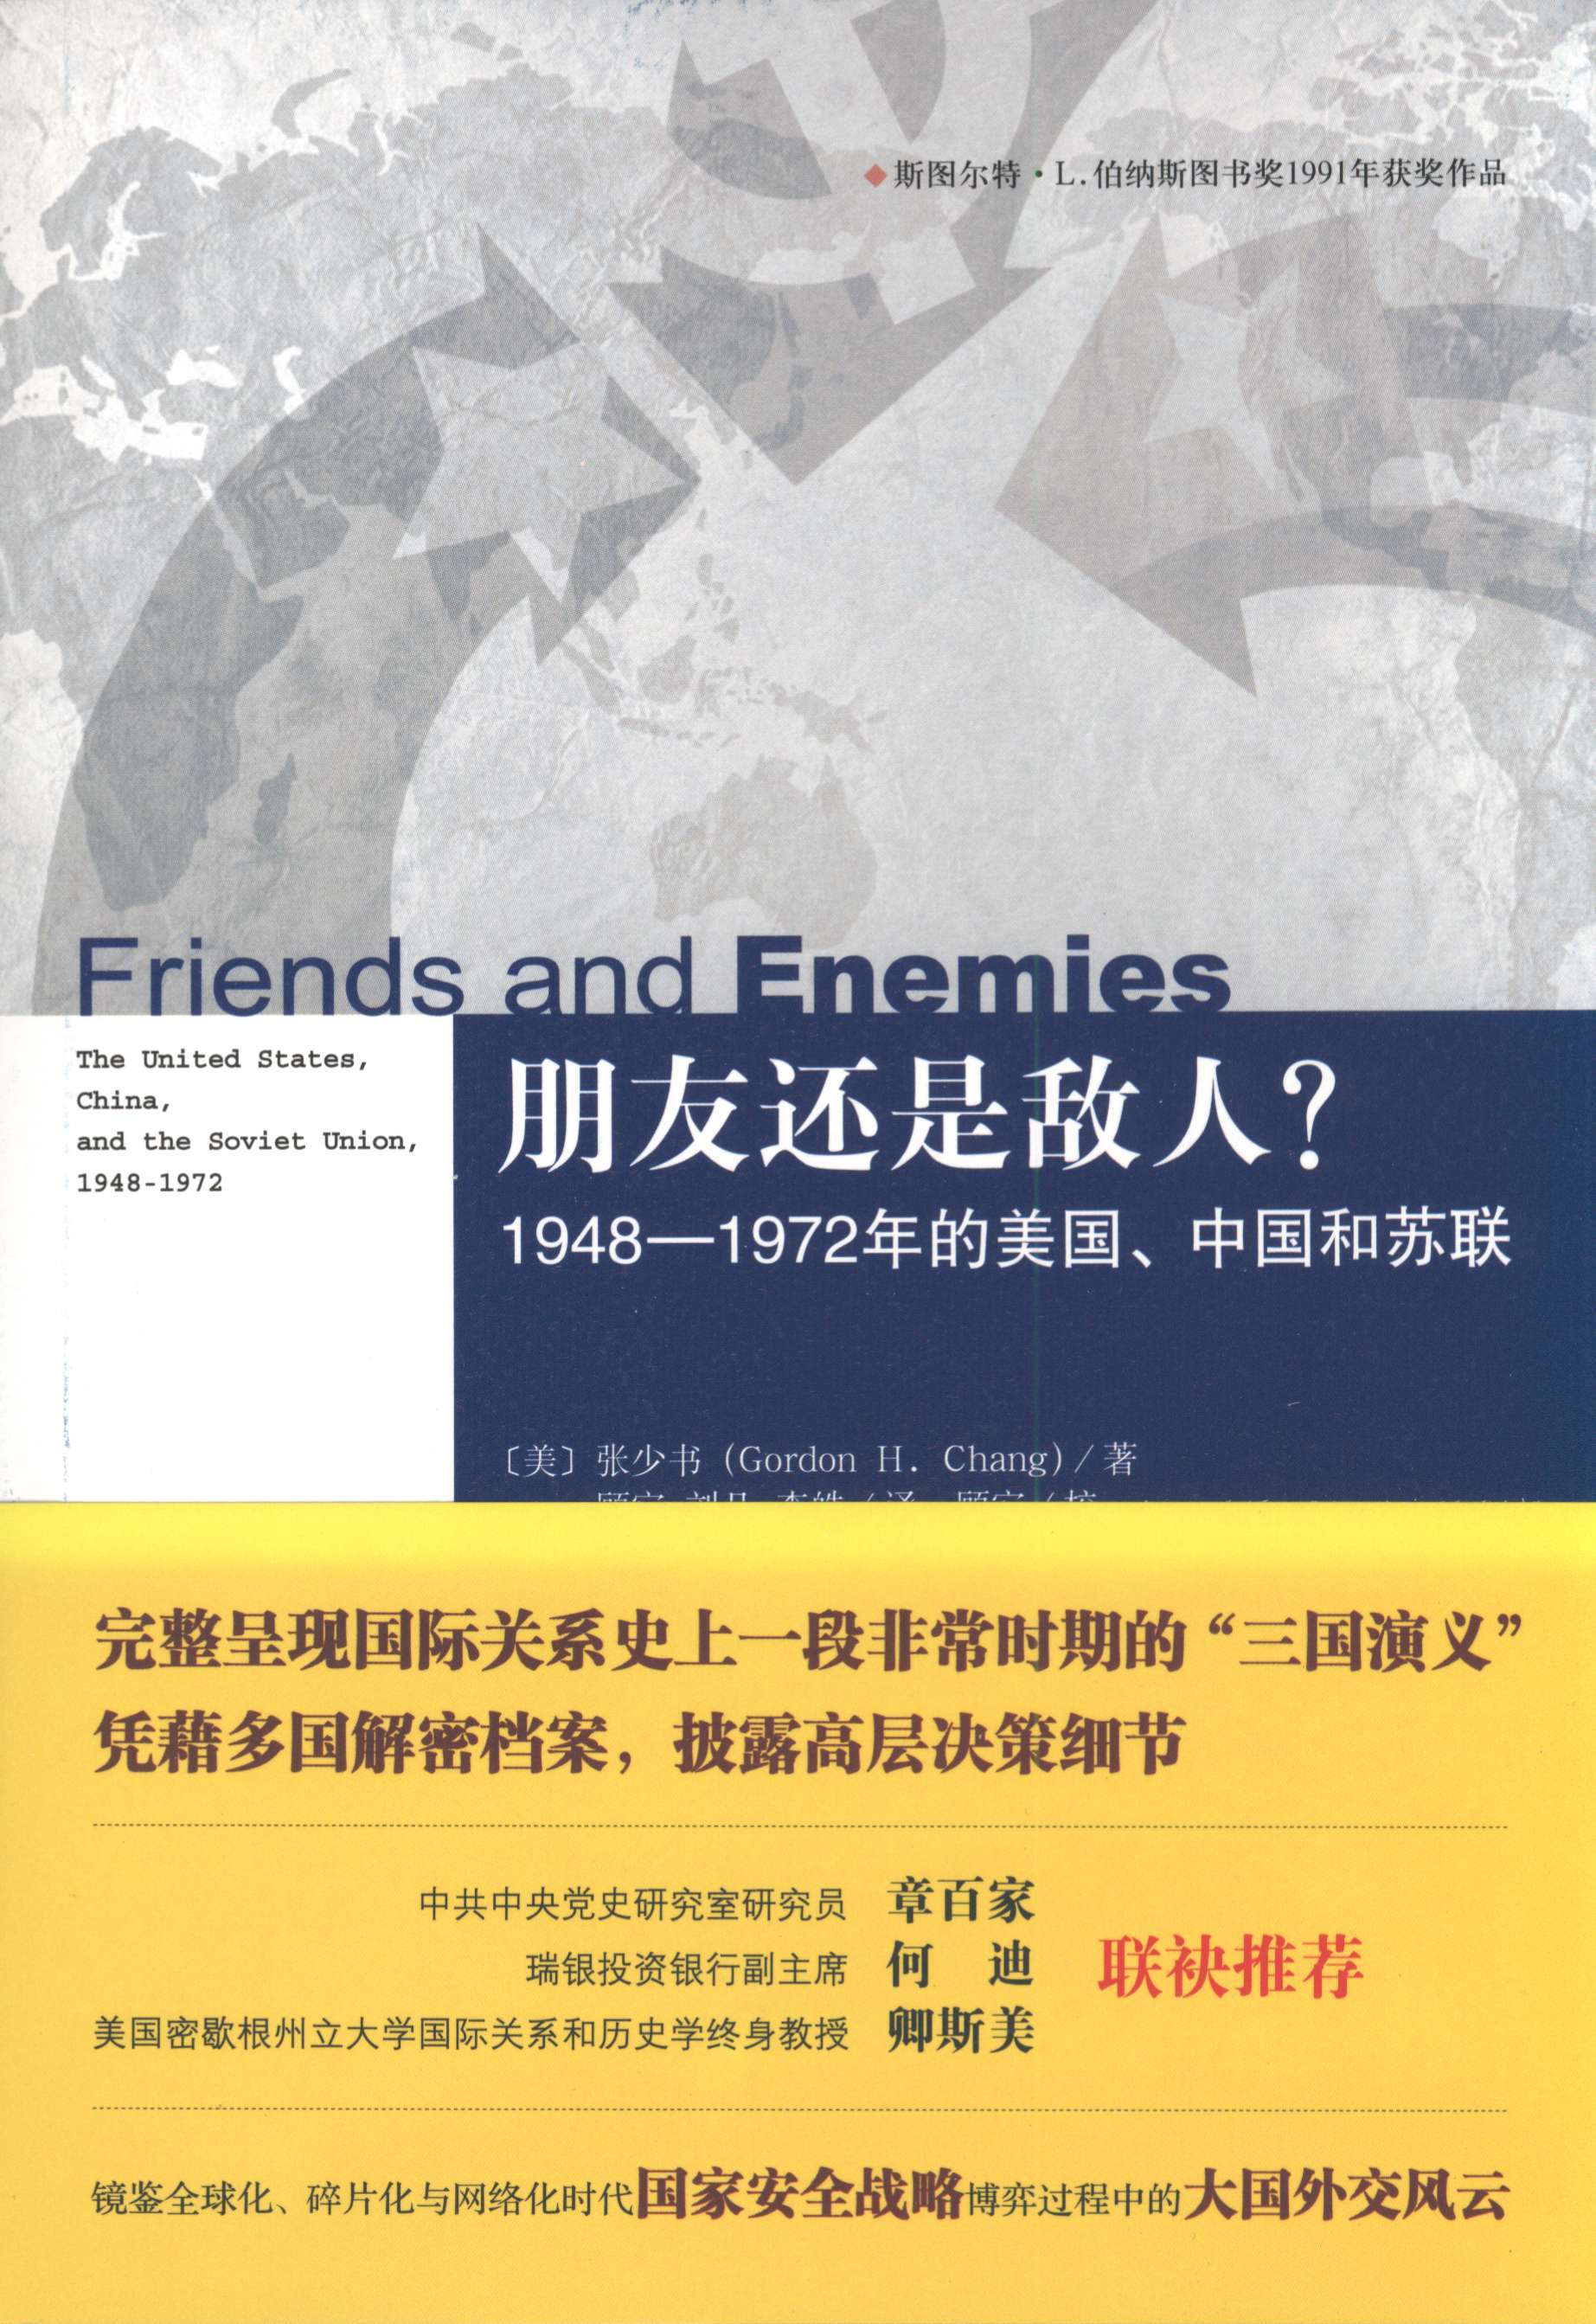 朋友还是敌人？1948-1972年的美国、中国和苏联